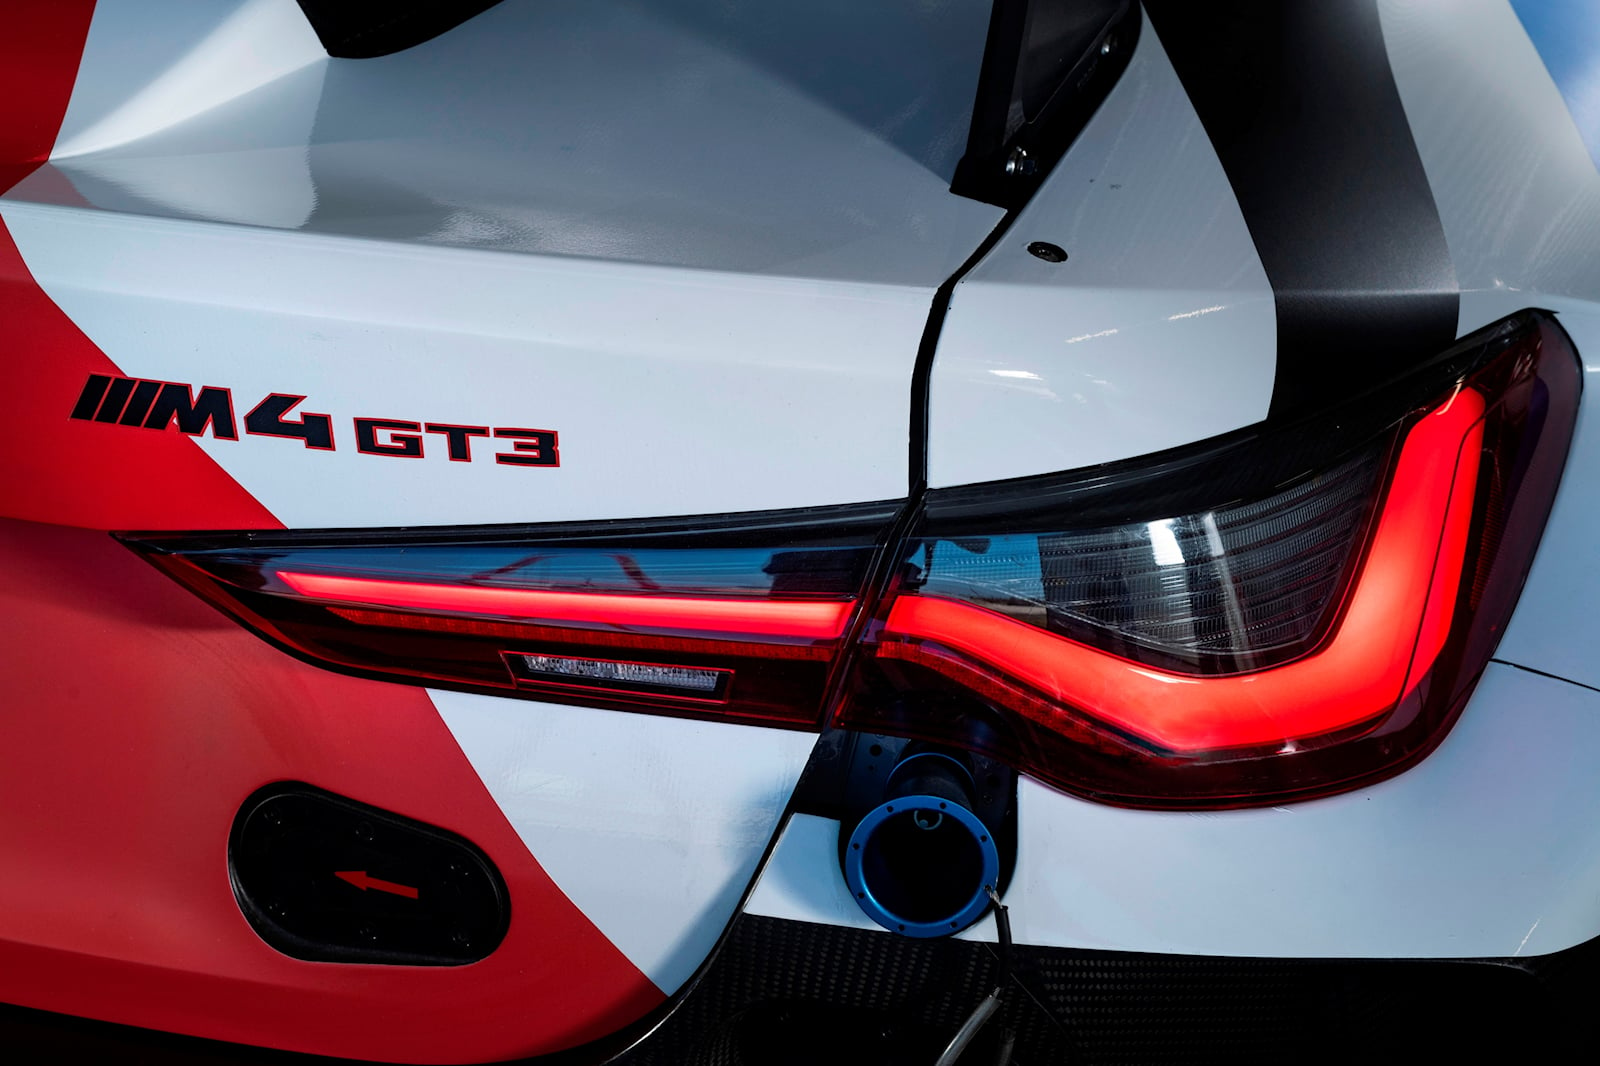 Компания BMW Motorsport заявила, что ее премьера состоится 17 июня. Поставки трекового автомобиля начнутся до конца года. GT4 получит мотивацию от 3,0-литрового рядного шестицилиндрового двигателя M4 с двойным турбонаддувом, и, хотя гоночные правила 